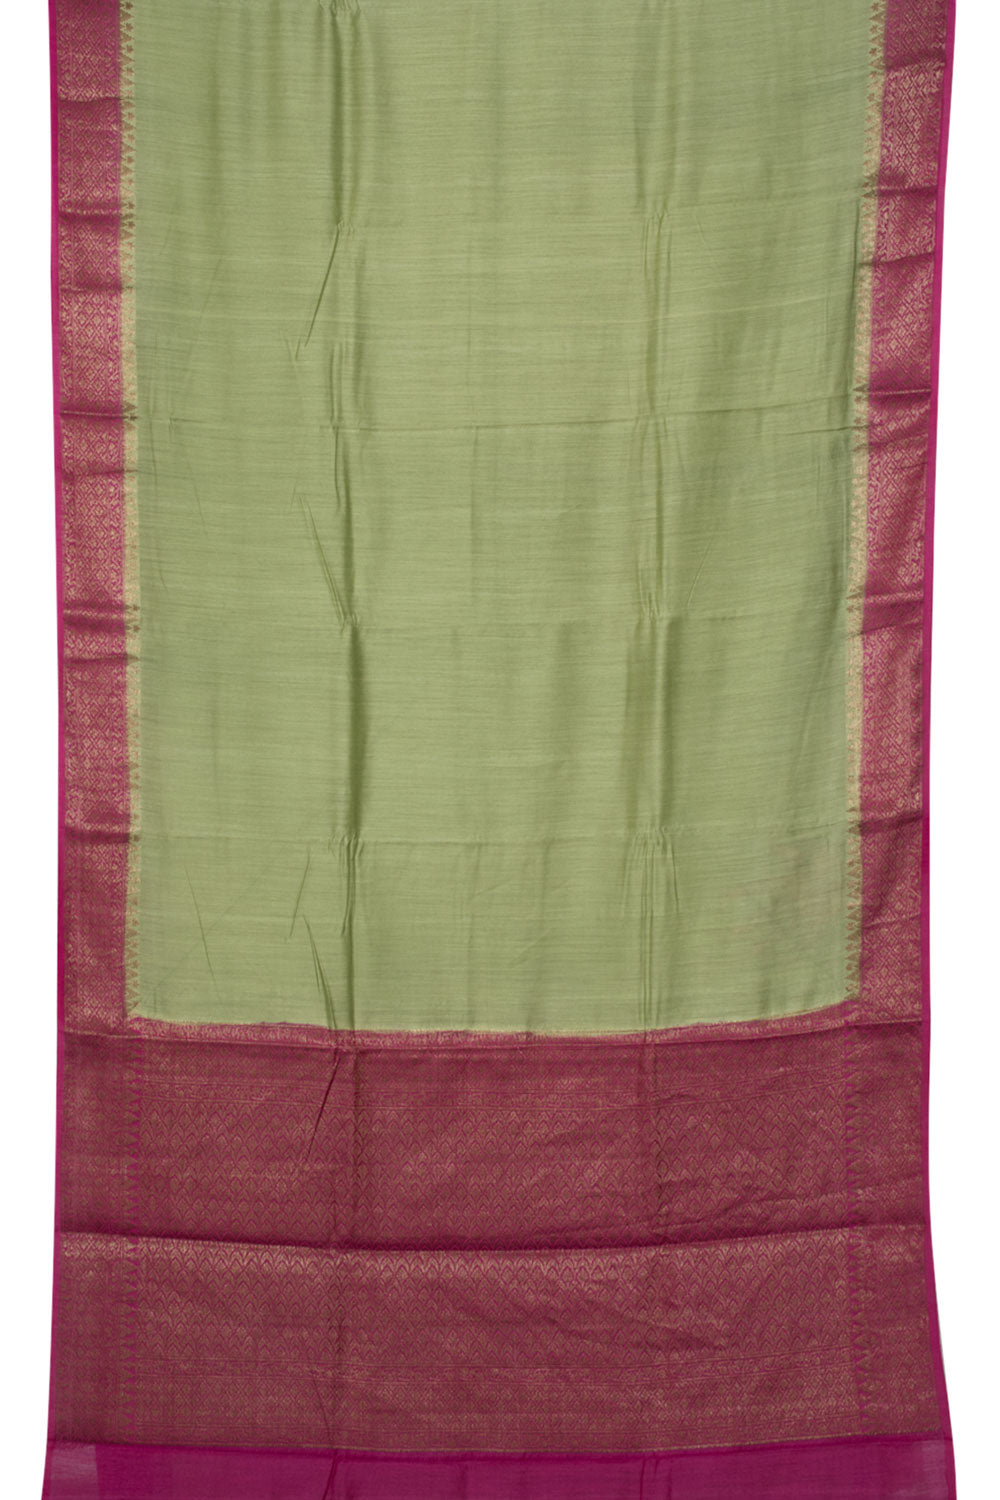 Handloom Banarasi Muga Silk Saree 10061135